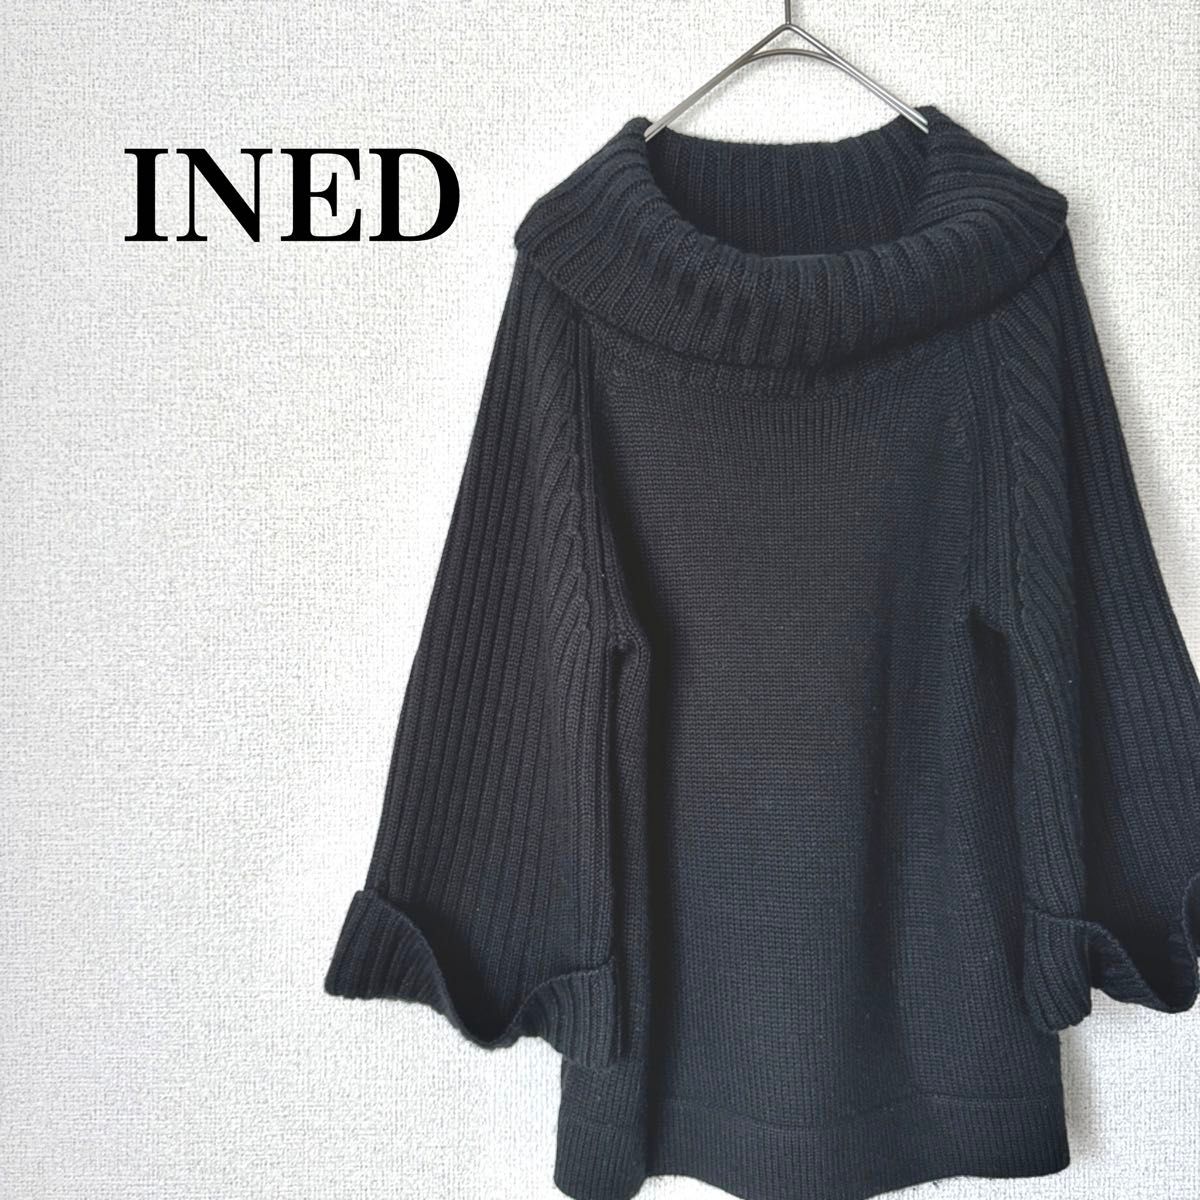 【INED】イネド ニット セーター タートルネック サイズS 9 7分丈 ボリューム袖 ブラック 秋冬 